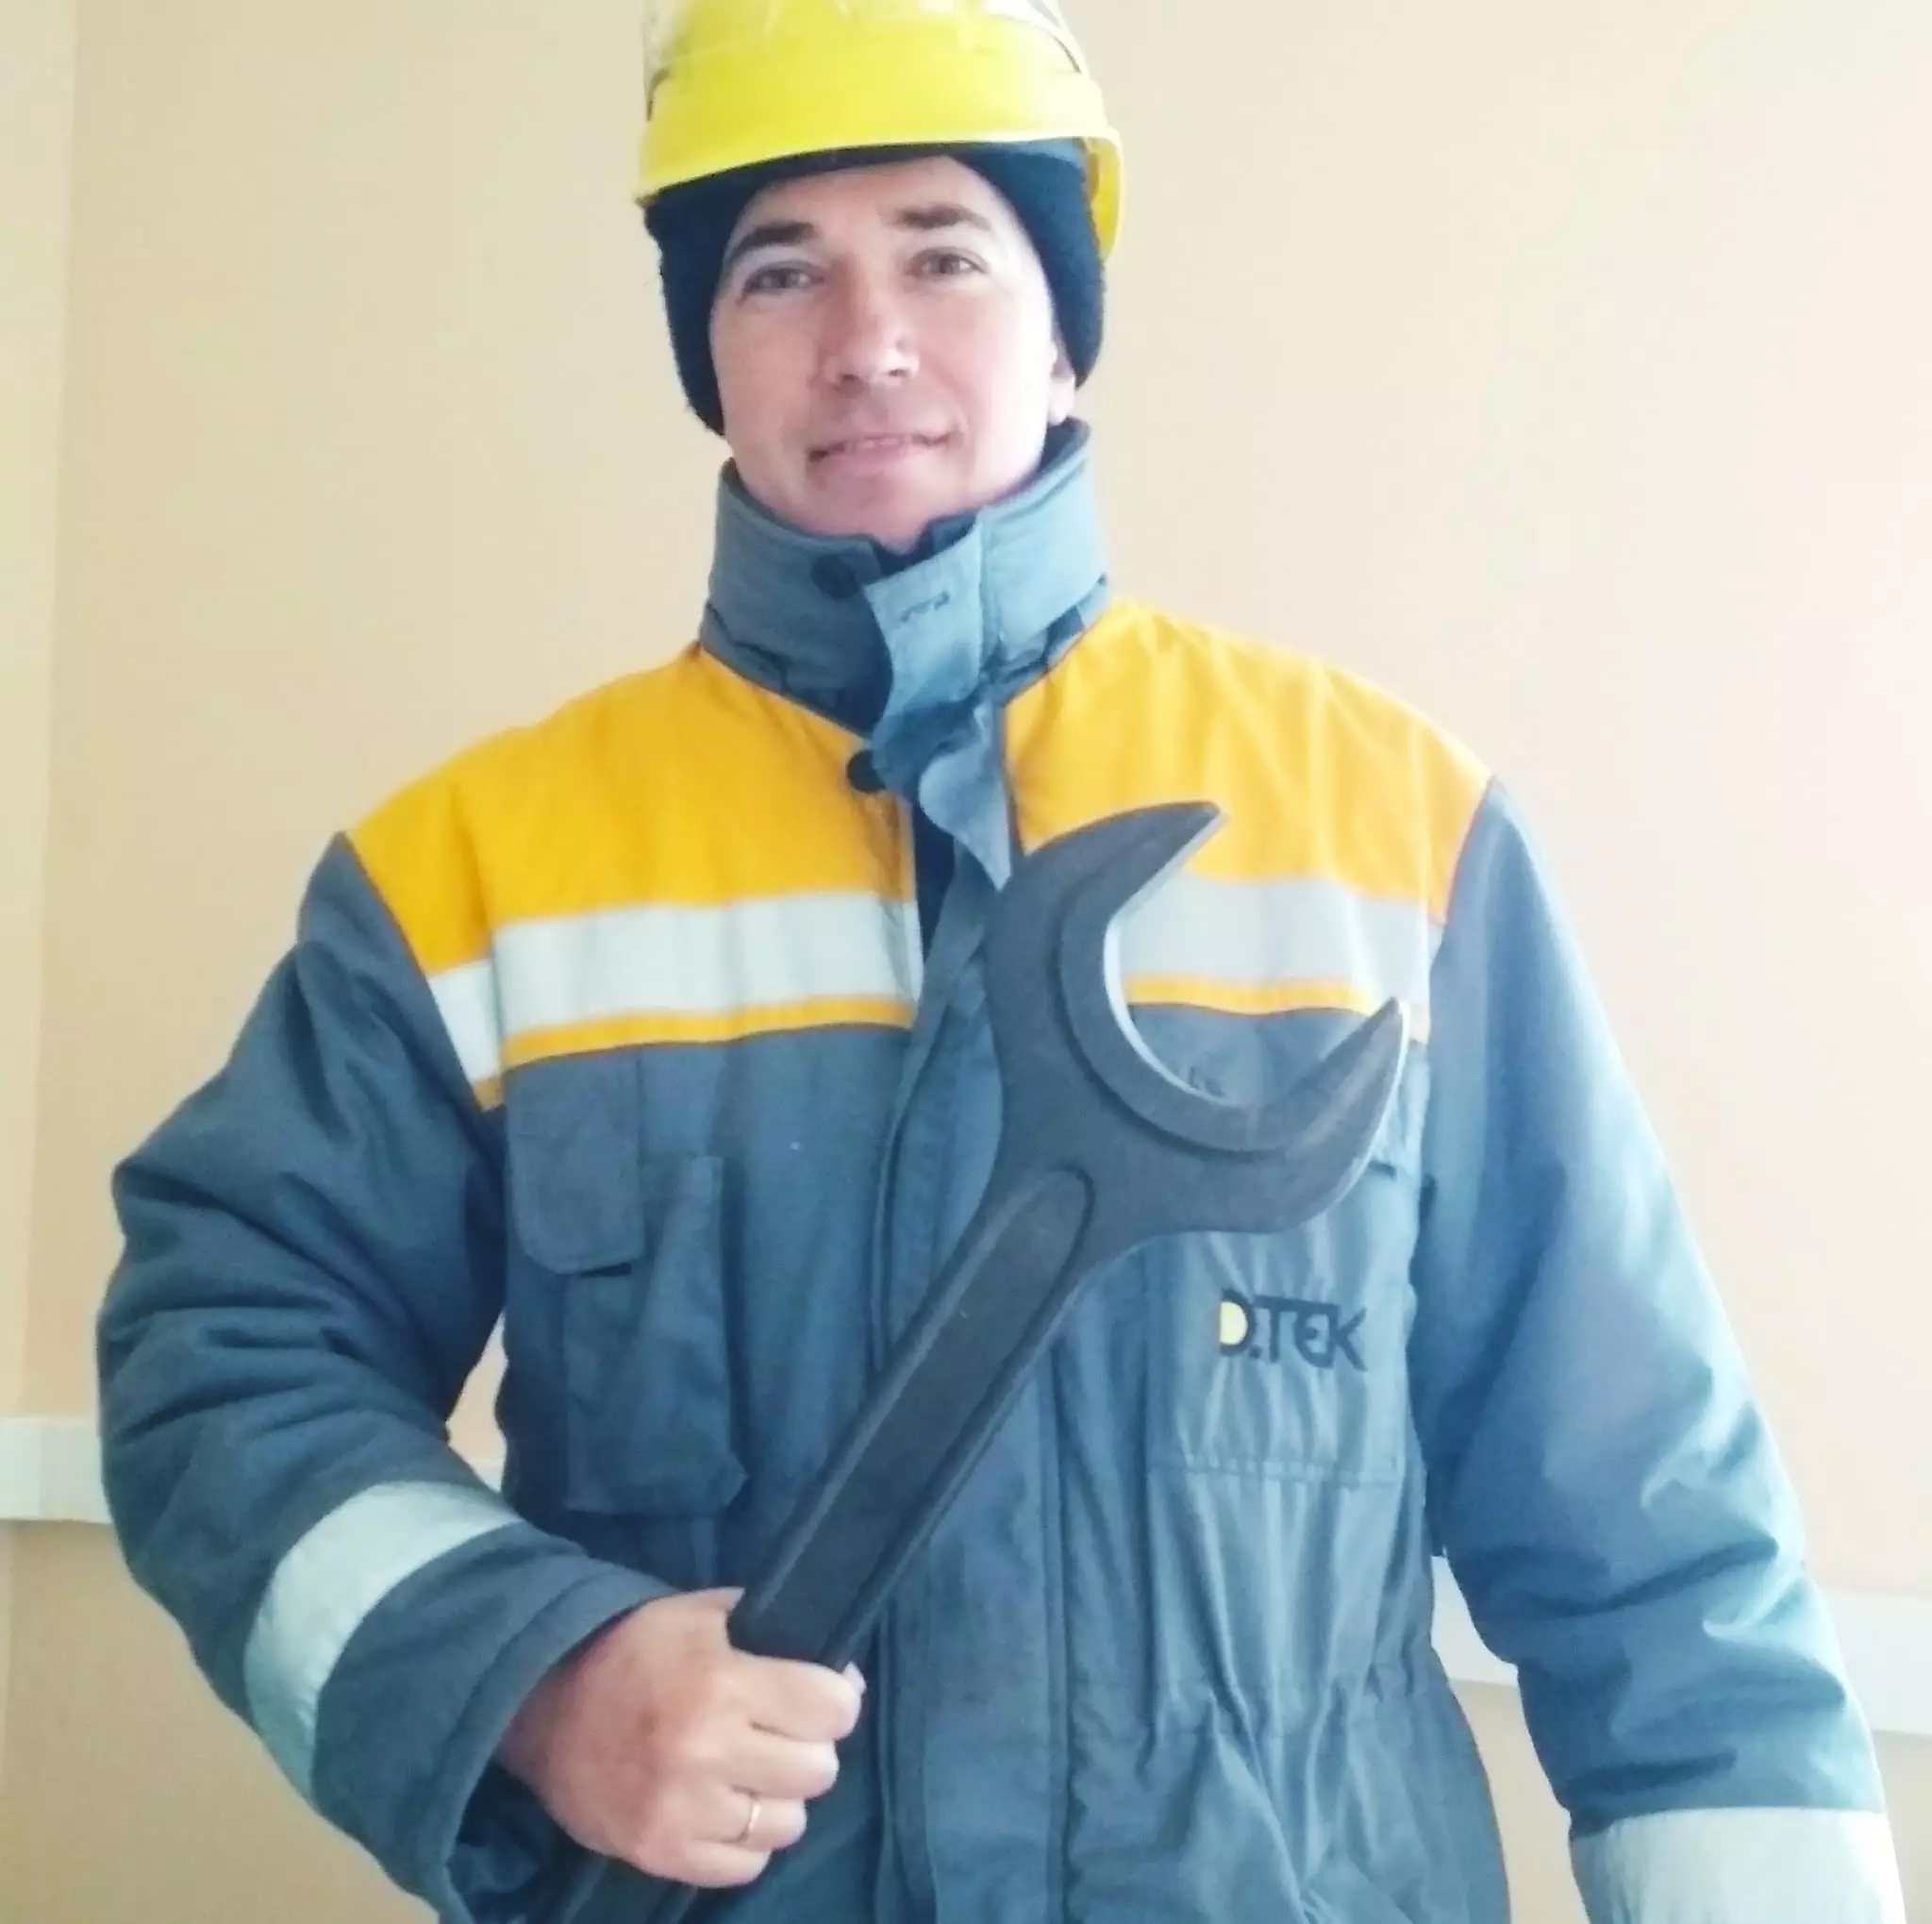 Віталій Лоза, слюсар контрольно-вимірювальних приладів і автоматики ДТЕК Нафтогаз.